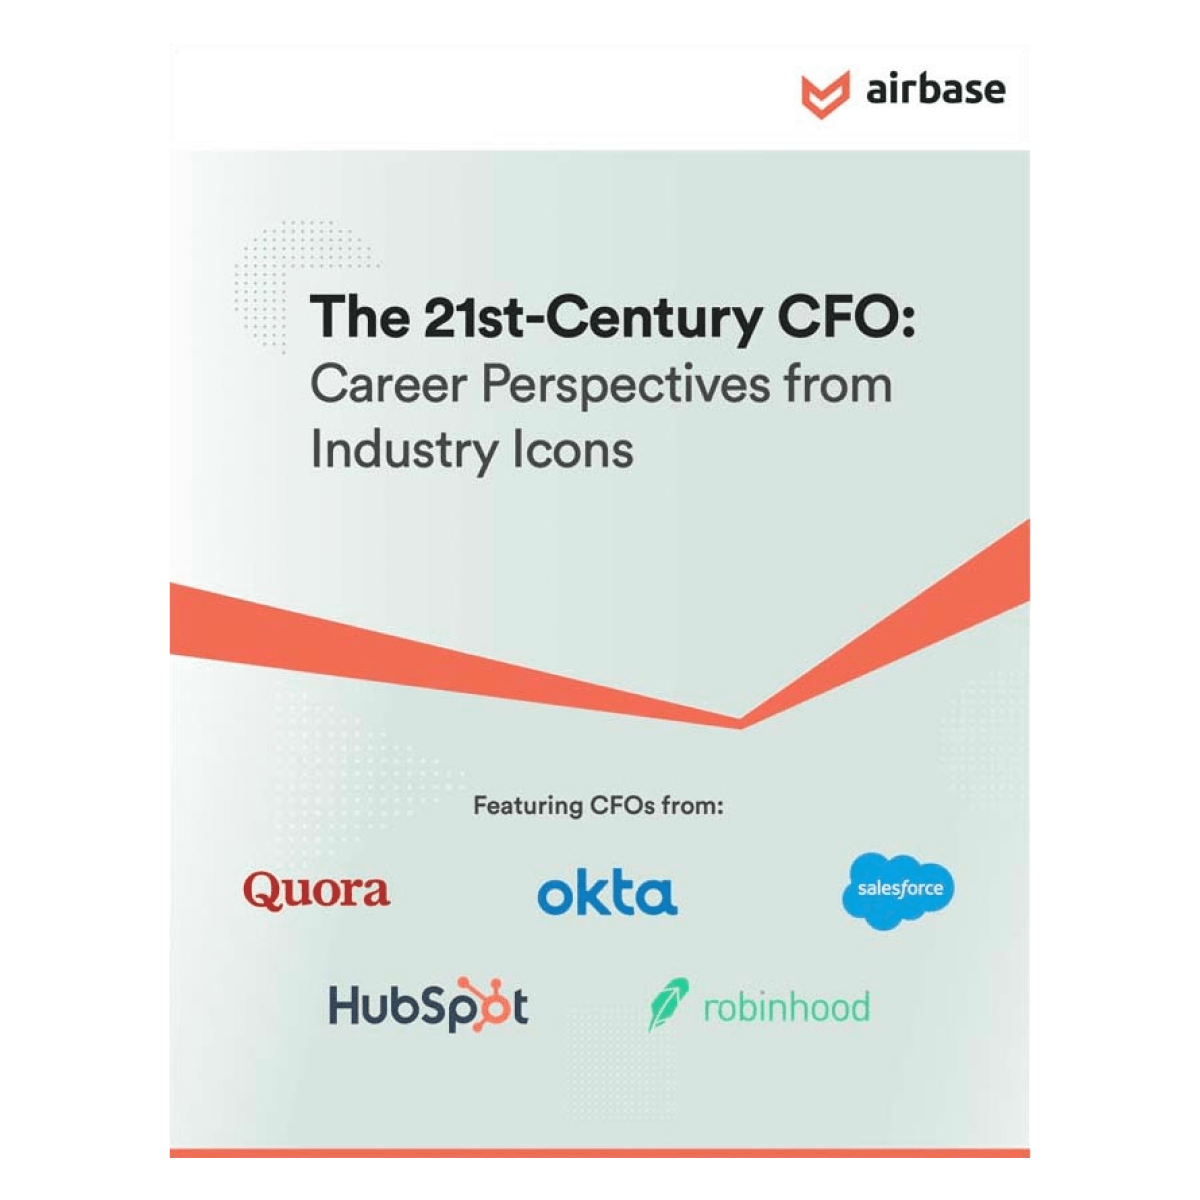 The 21st-Century CFO